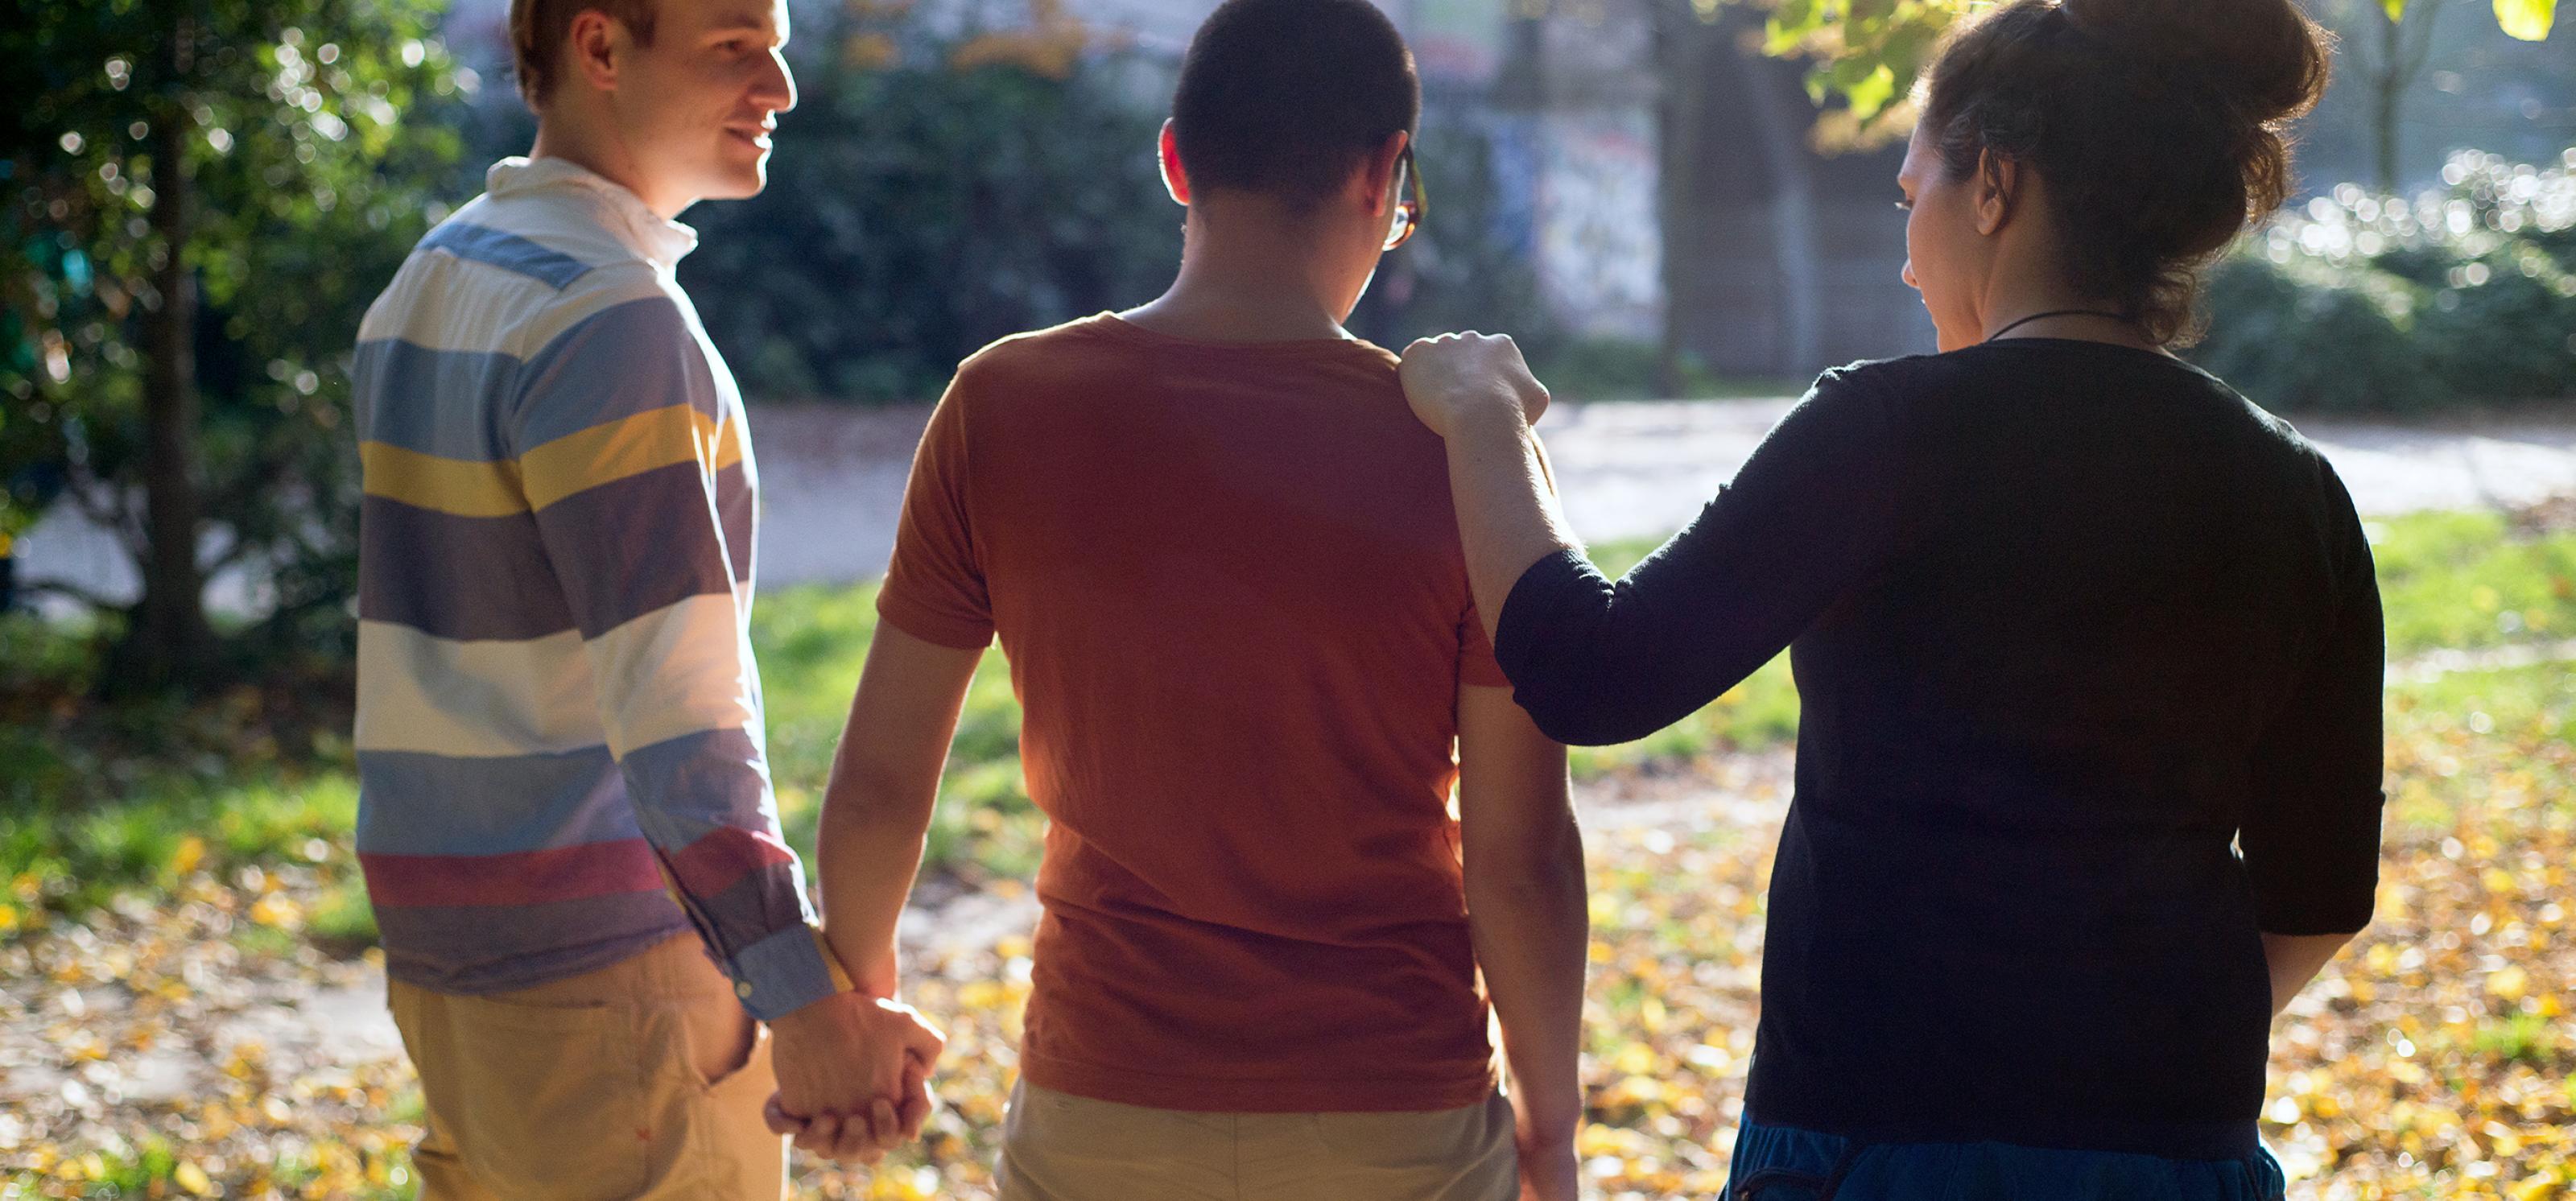 Eine Gruppe von drei Personen geht durch einen herbstlichen Park: Zwei Männer halten sich an den Händen, eine Frau legt ihre Hand auf die Schulter des einen Mannes